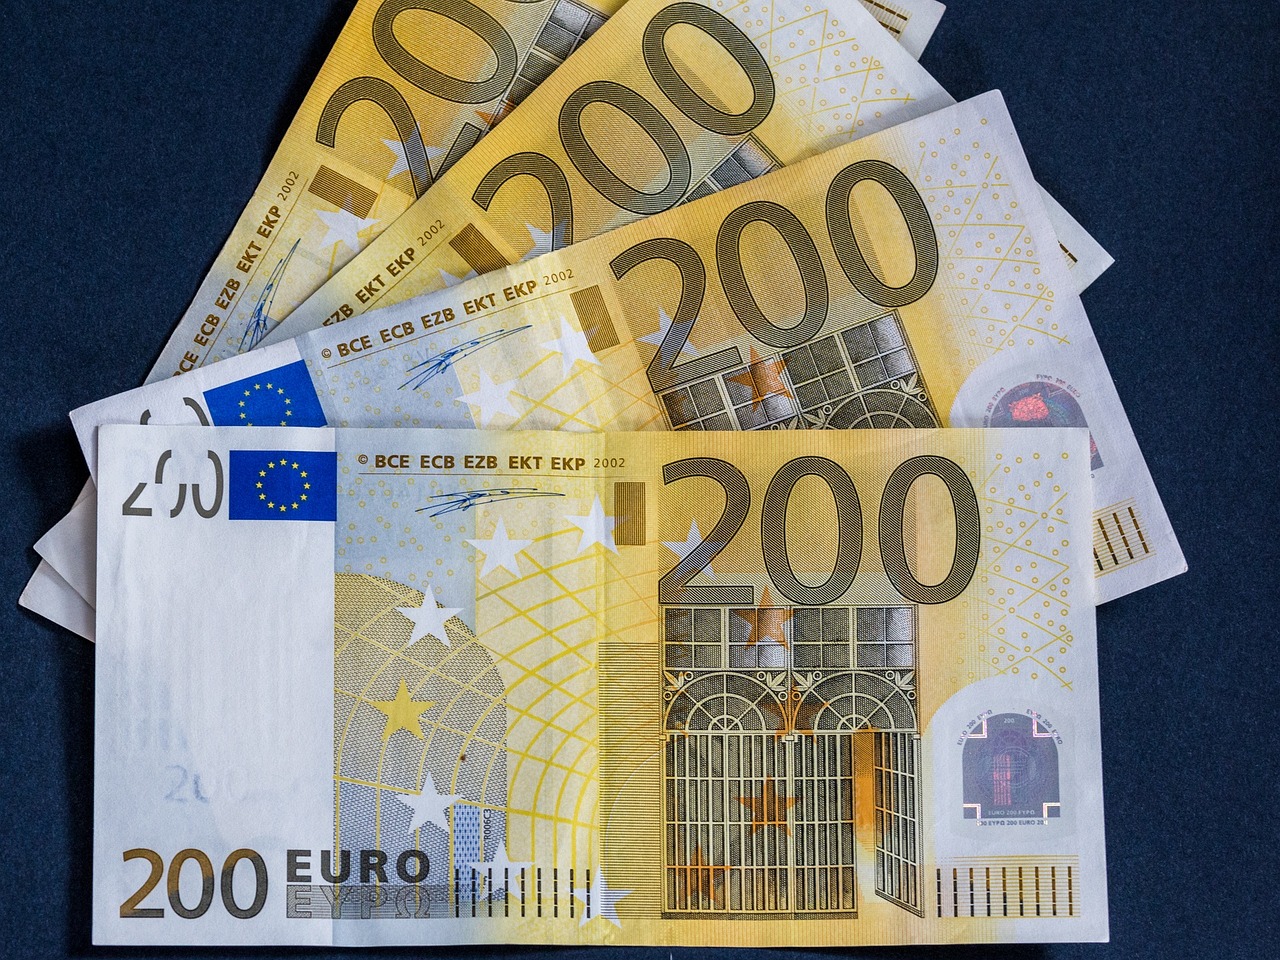 El cheque de 200 euros era una de las medidas dirigida a paliar las consecuencias económicas de la invasión rusa de Ucrania. Foto: Pixabay.